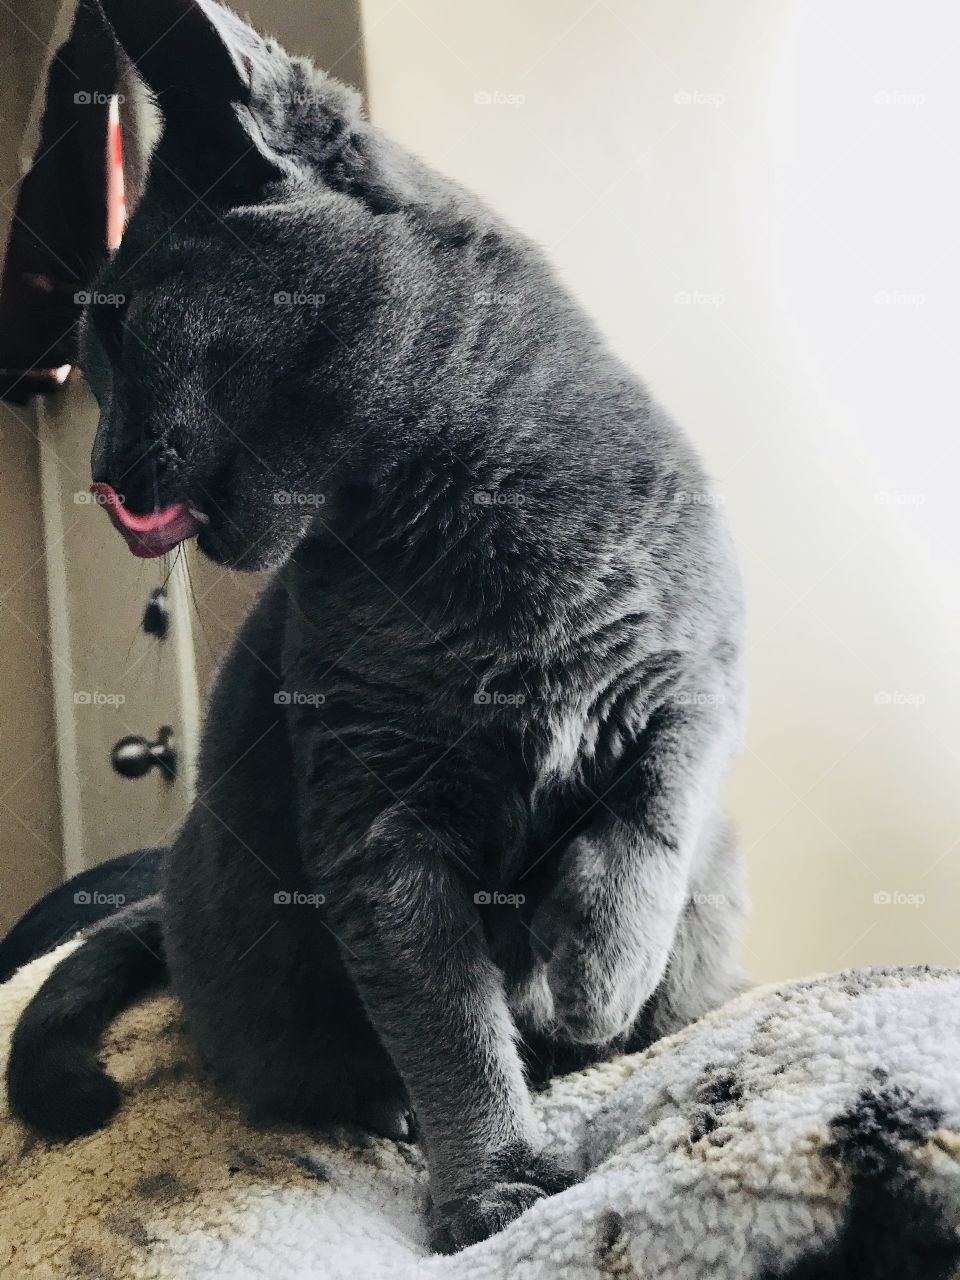 Kitty tongue 